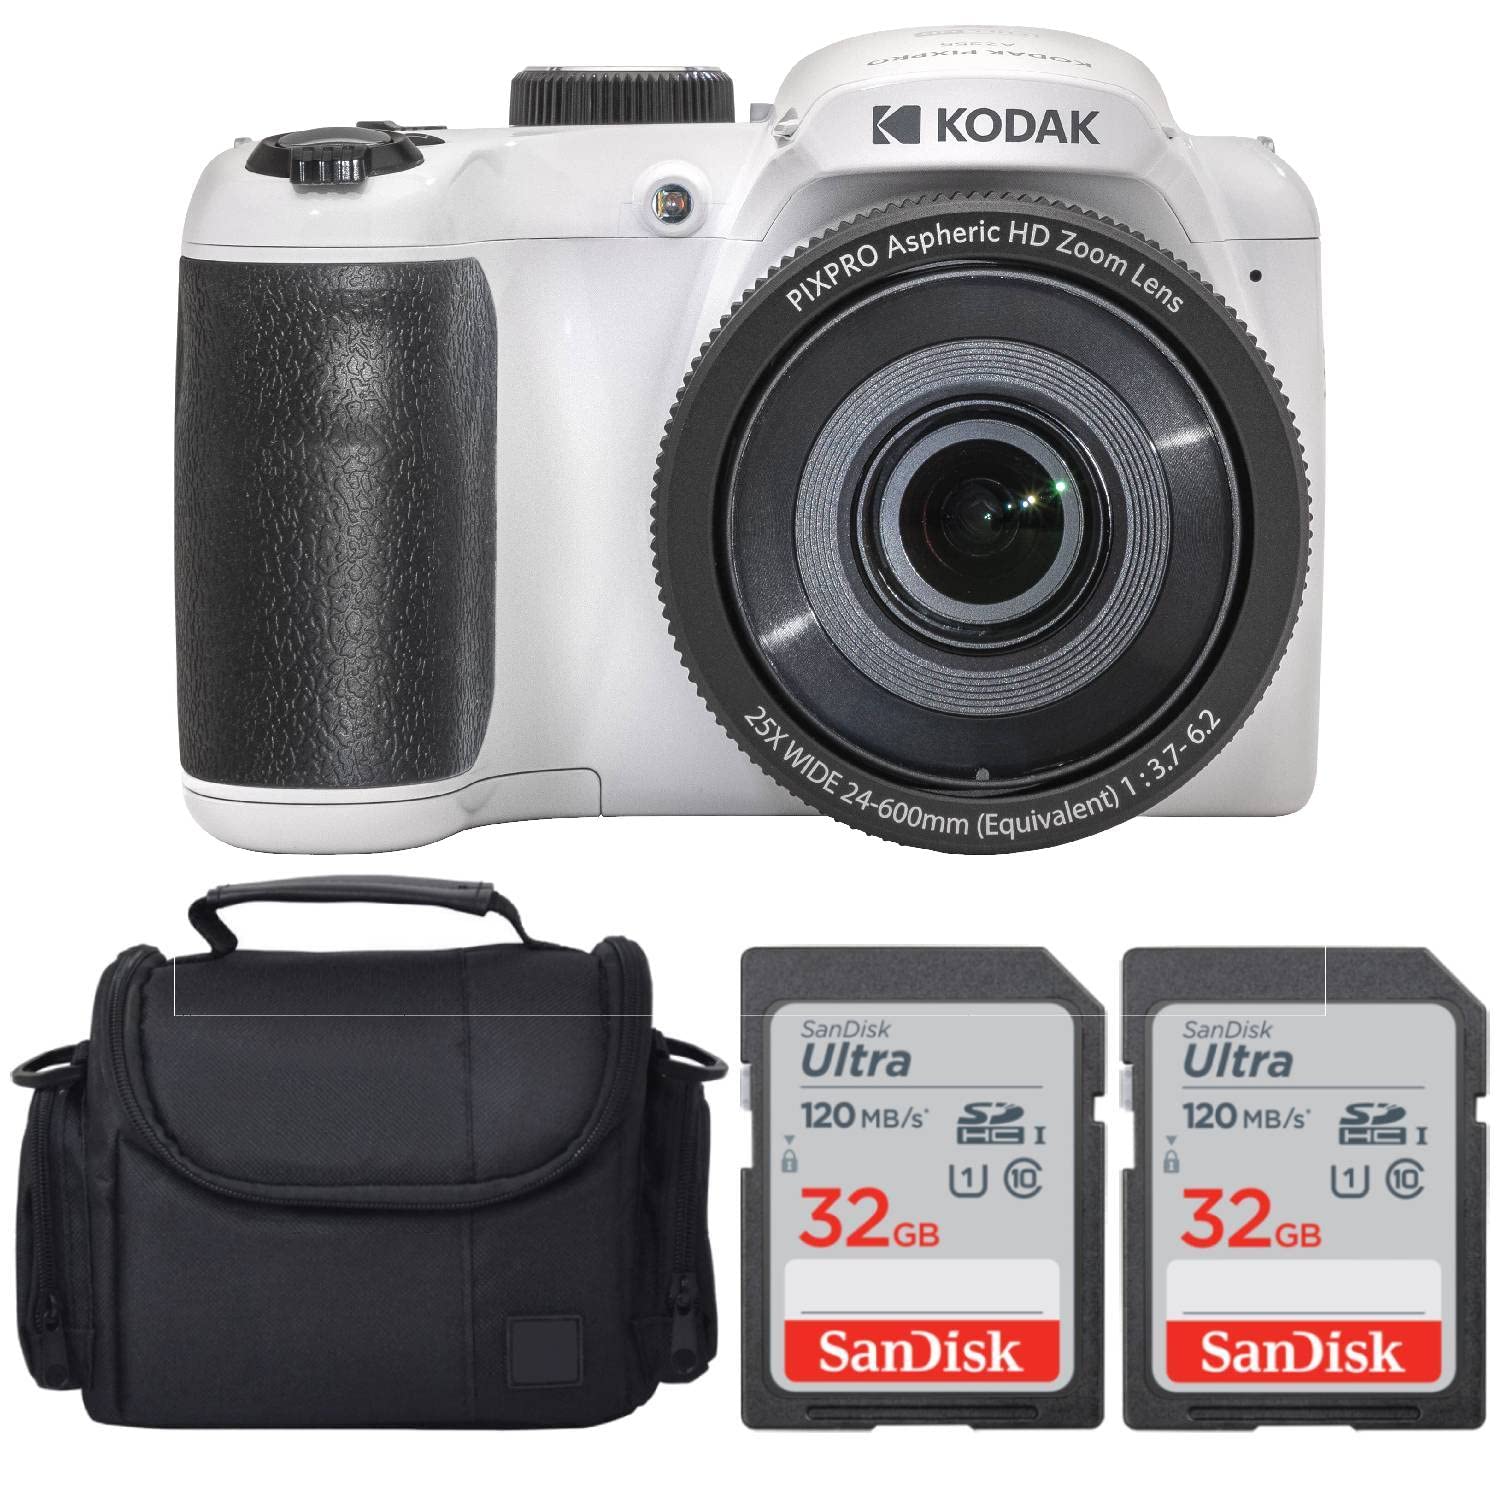 コダック Kodak PIXPRO AZ255 Digital Camera White Bundle with 32GB Ultra UHS-I SDHC Memory Card 2 Case 4 Items 送